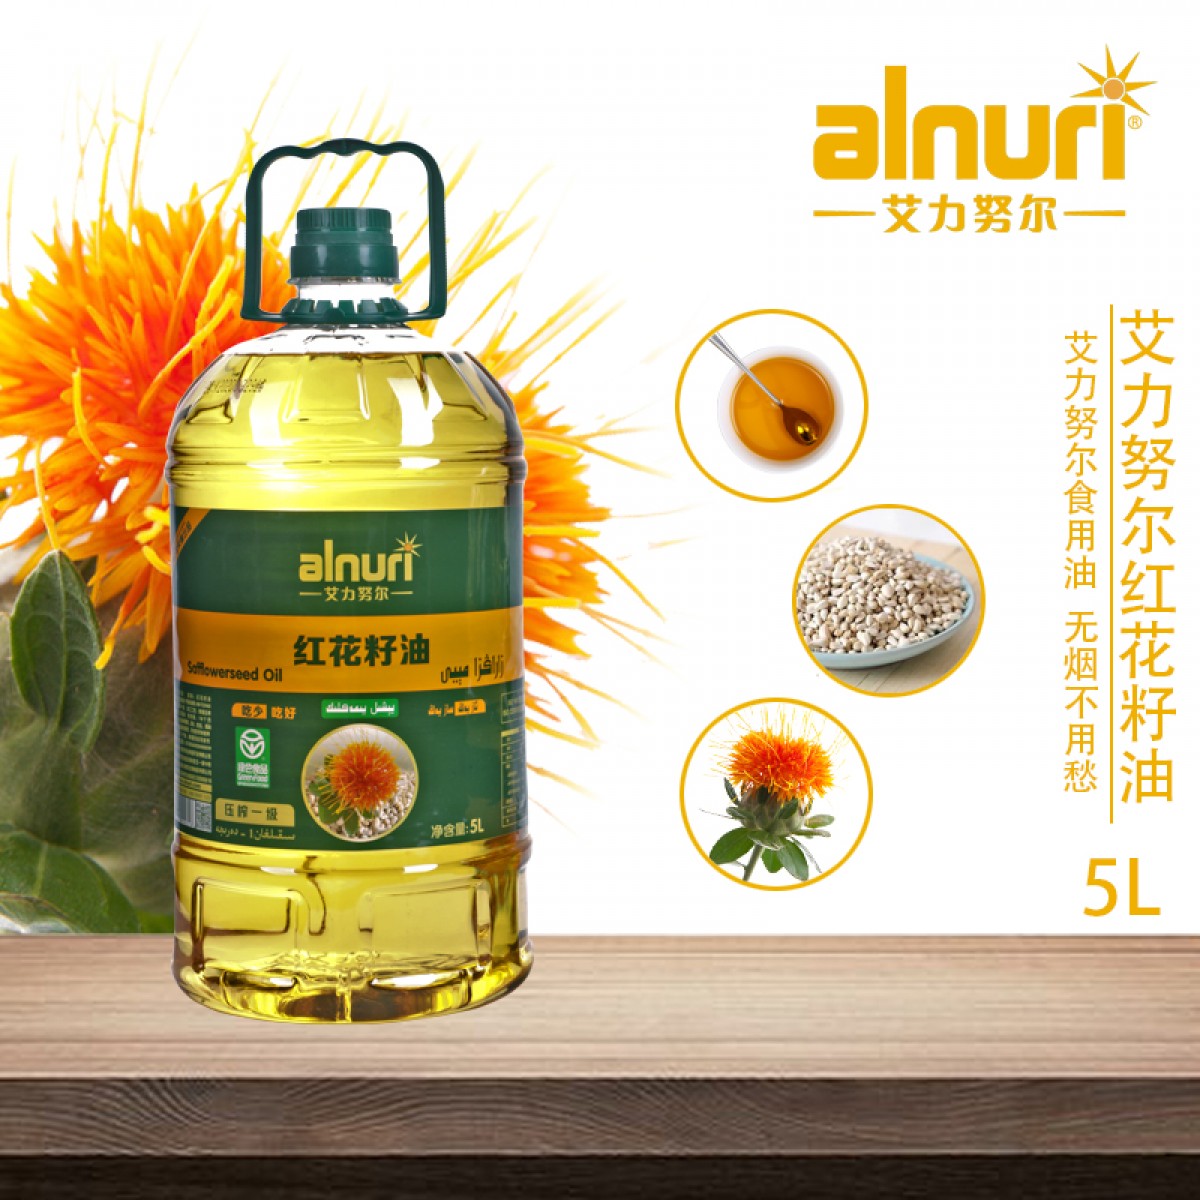 新疆alnuri民光红花籽油5L物理压榨一级食用植物油红花油